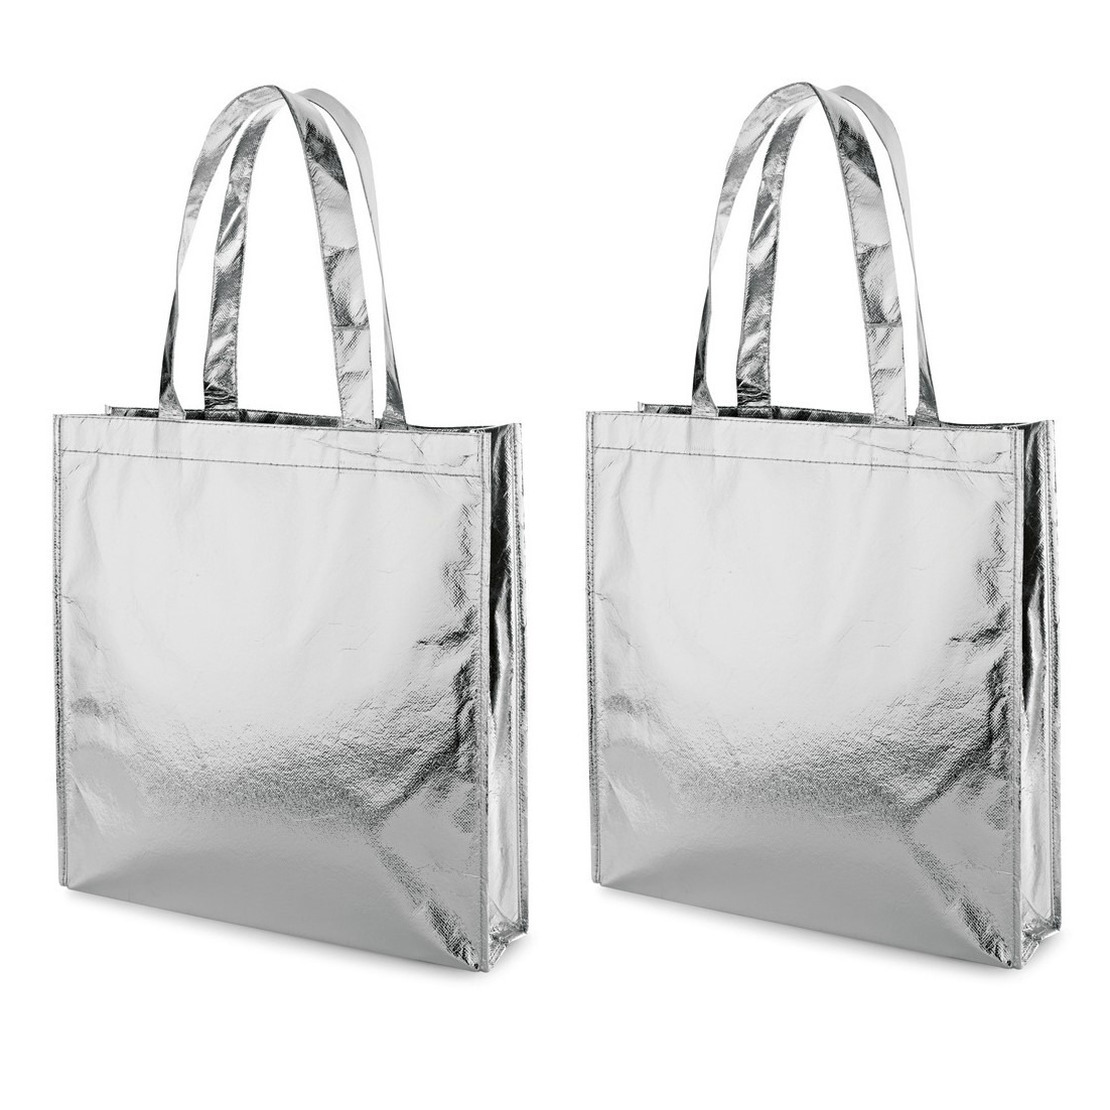 3x Gelamineerde boodschappentassen/shoppers zilver 34 x 35 cm - Non-woven gelamineerde tassen met 50 cm handvatten